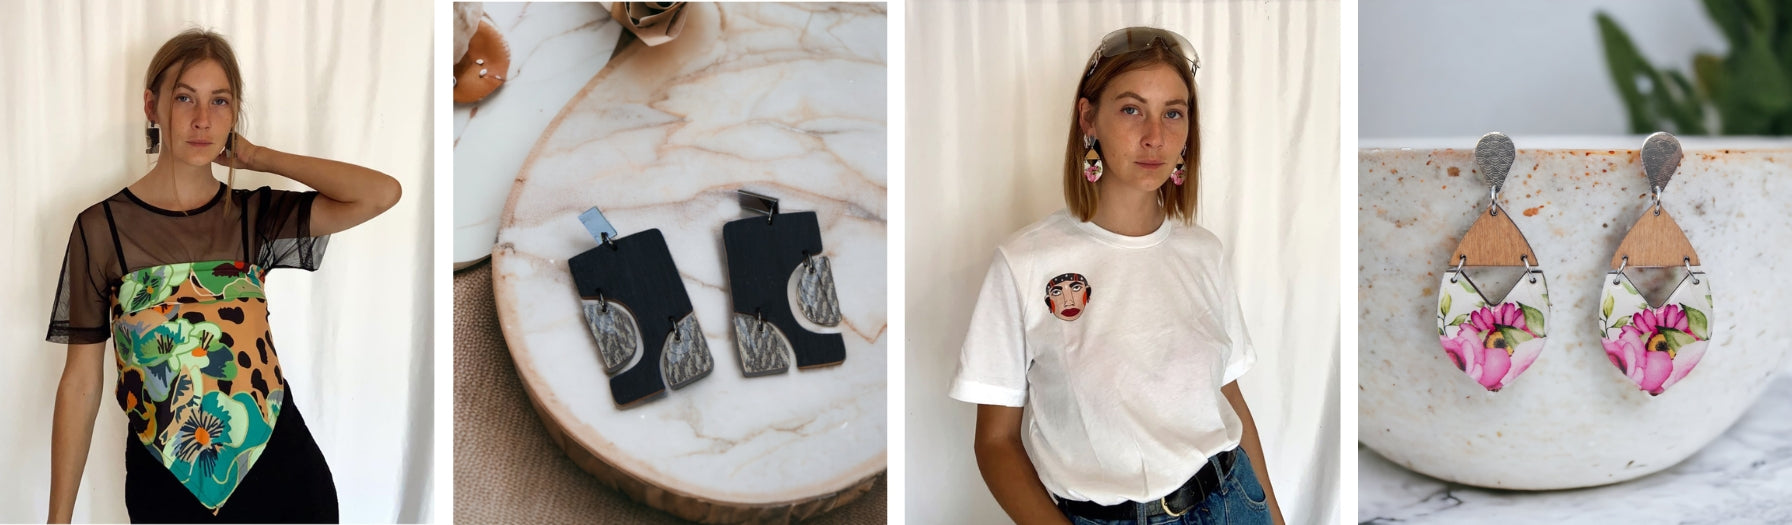 De kunst van zelfexpressie en empowerment: Onthul de synergie van handgemaakte sieraden en kleurrijke kleding - Keelin Design sieraden blog